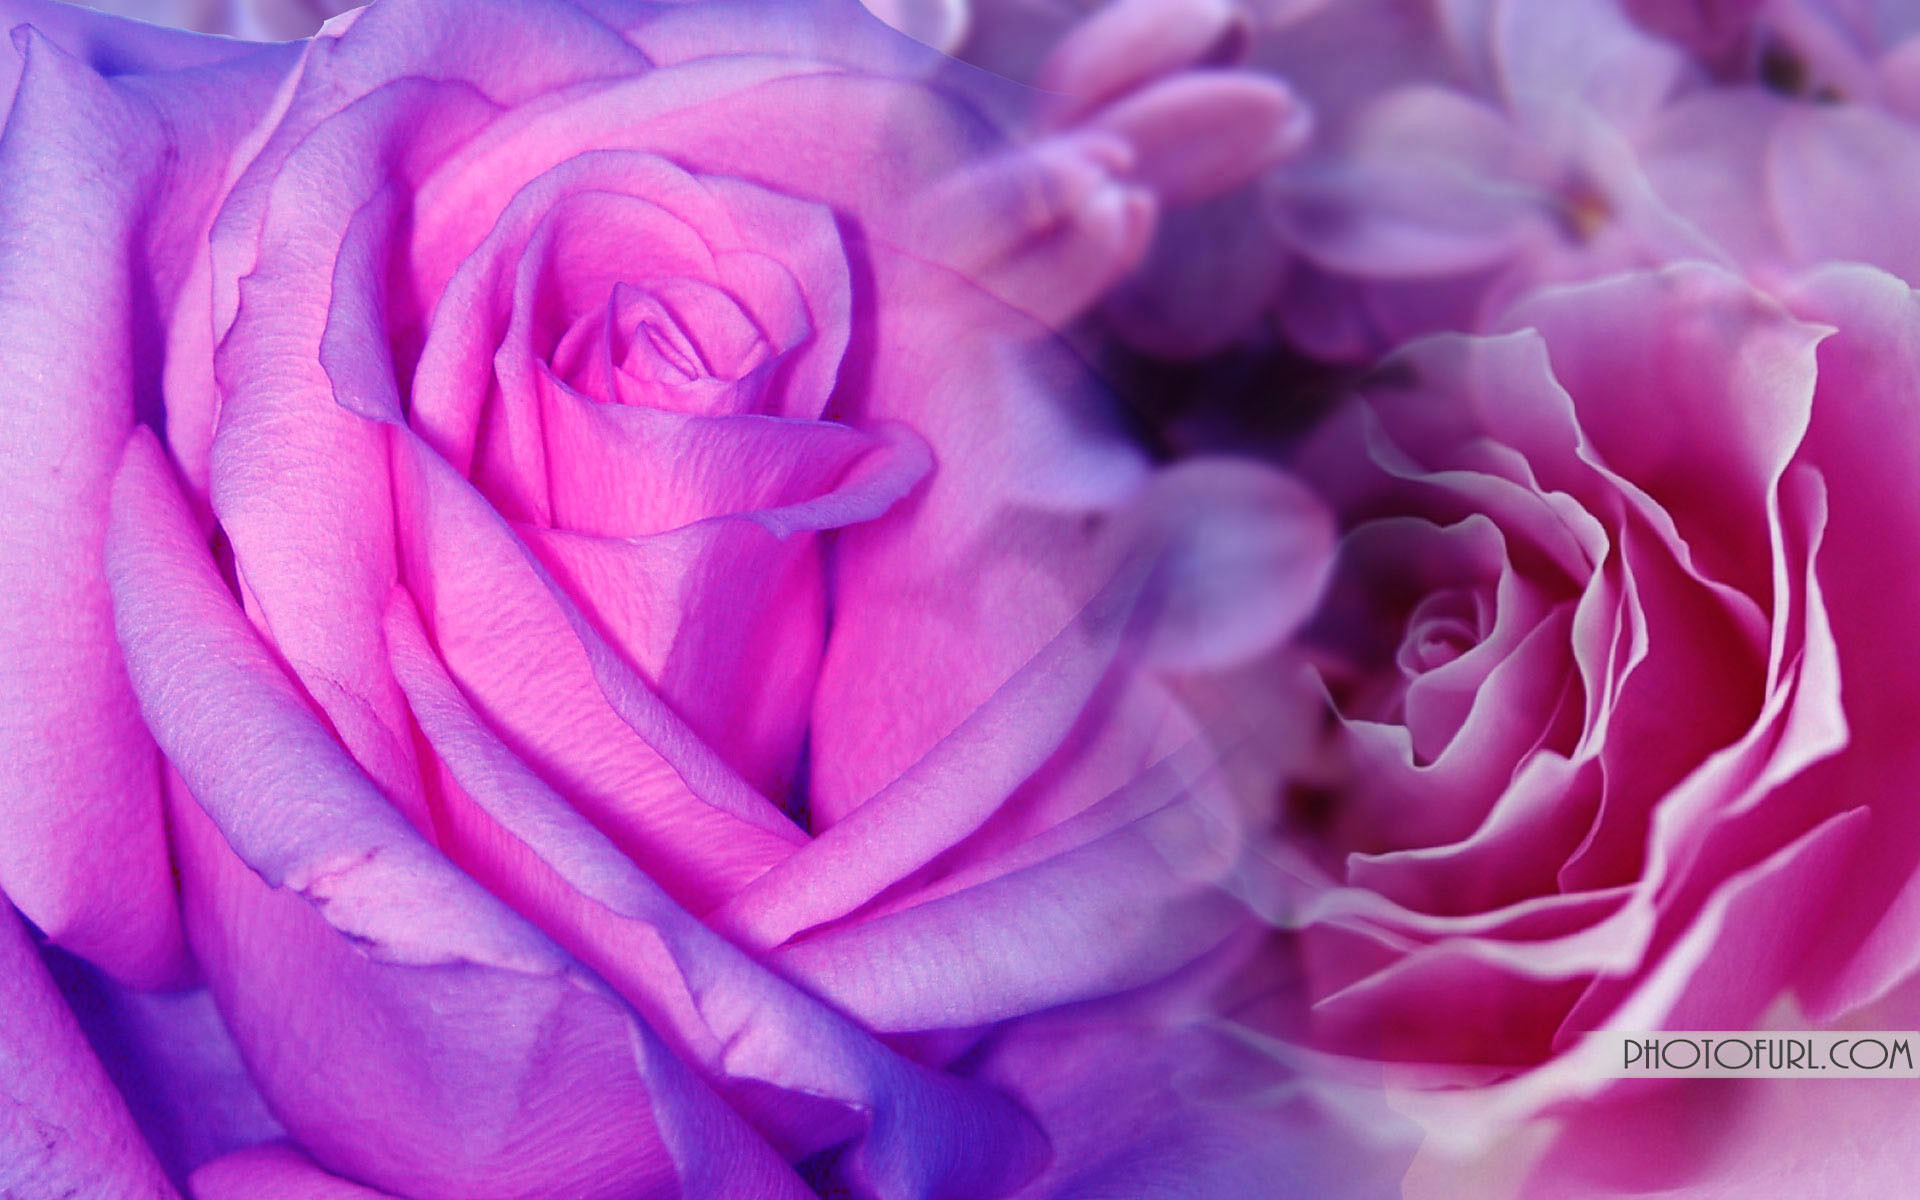 Hoa hồng và tím: Hoa hồng và tím là hai màu sắc quyến rũ với tình yêu và sự lãng mạn. Bức hình liên quan sẽ khiến bạn thấy tươi tắn và yêu đời hơn bao giờ hết.